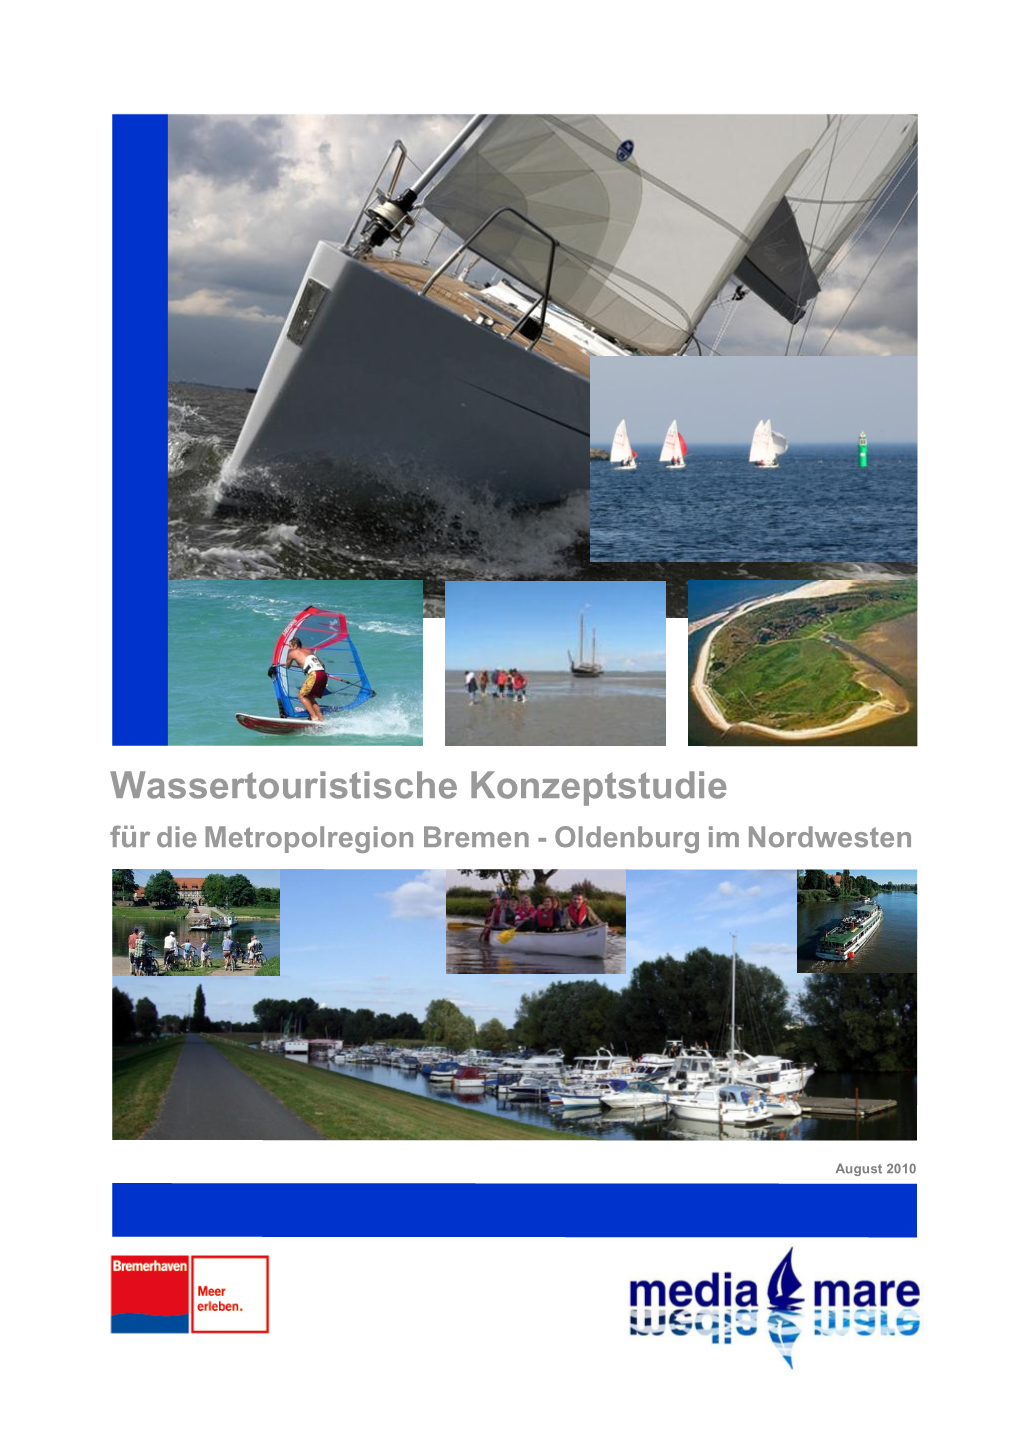 Wassertouristische Konzeptstudie Metropolregion Bremen-Oldenburg